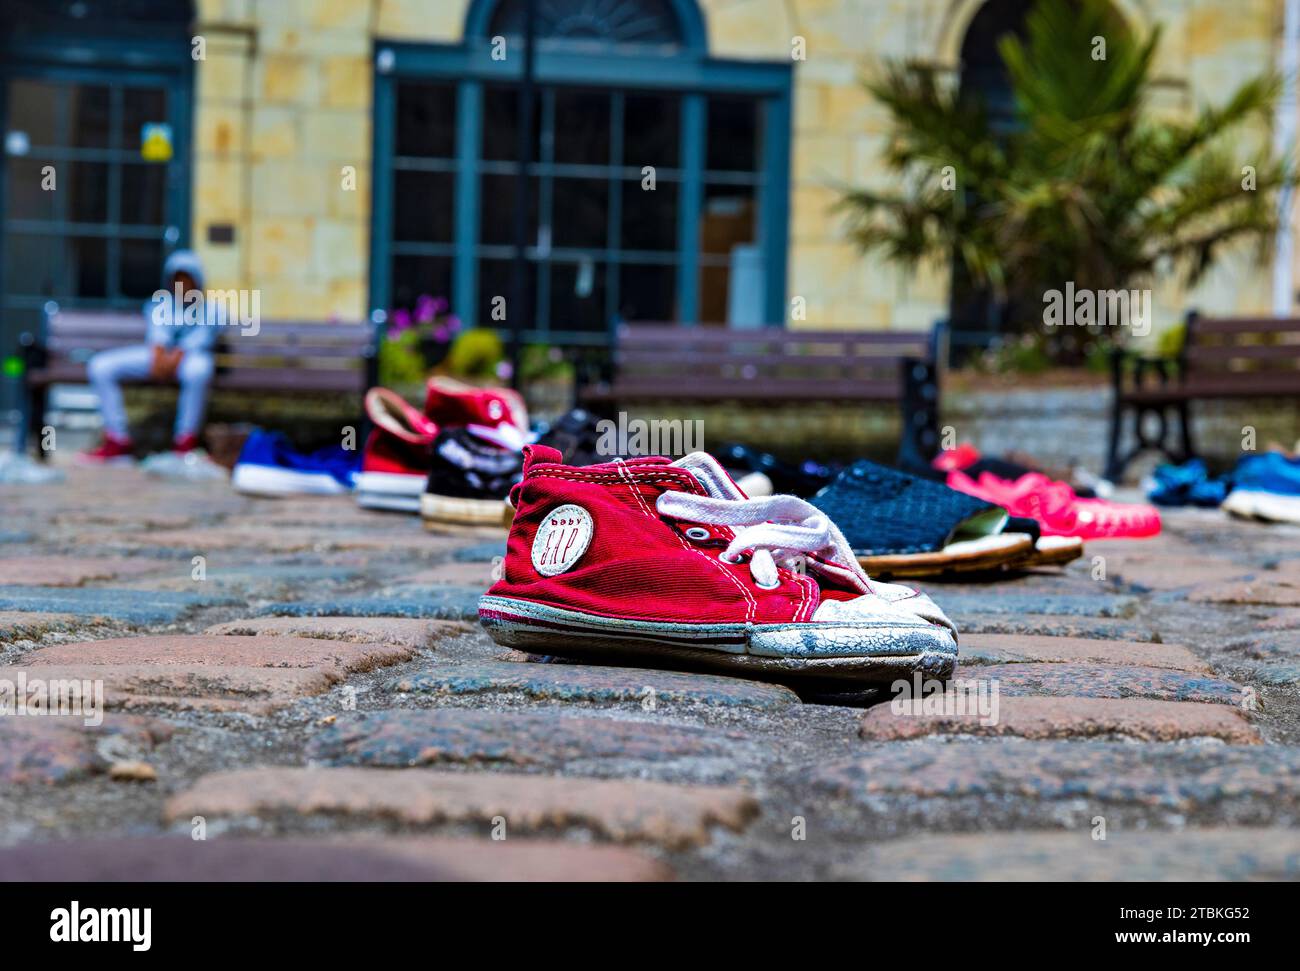 « Nous avons abandonné ces chaussures à l’extérieur de la cathédrale de Truro comme nos députés ont abandonné les enfants réfugiés » - les chaussures représentent la séparation des familles réfugiées. Banque D'Images